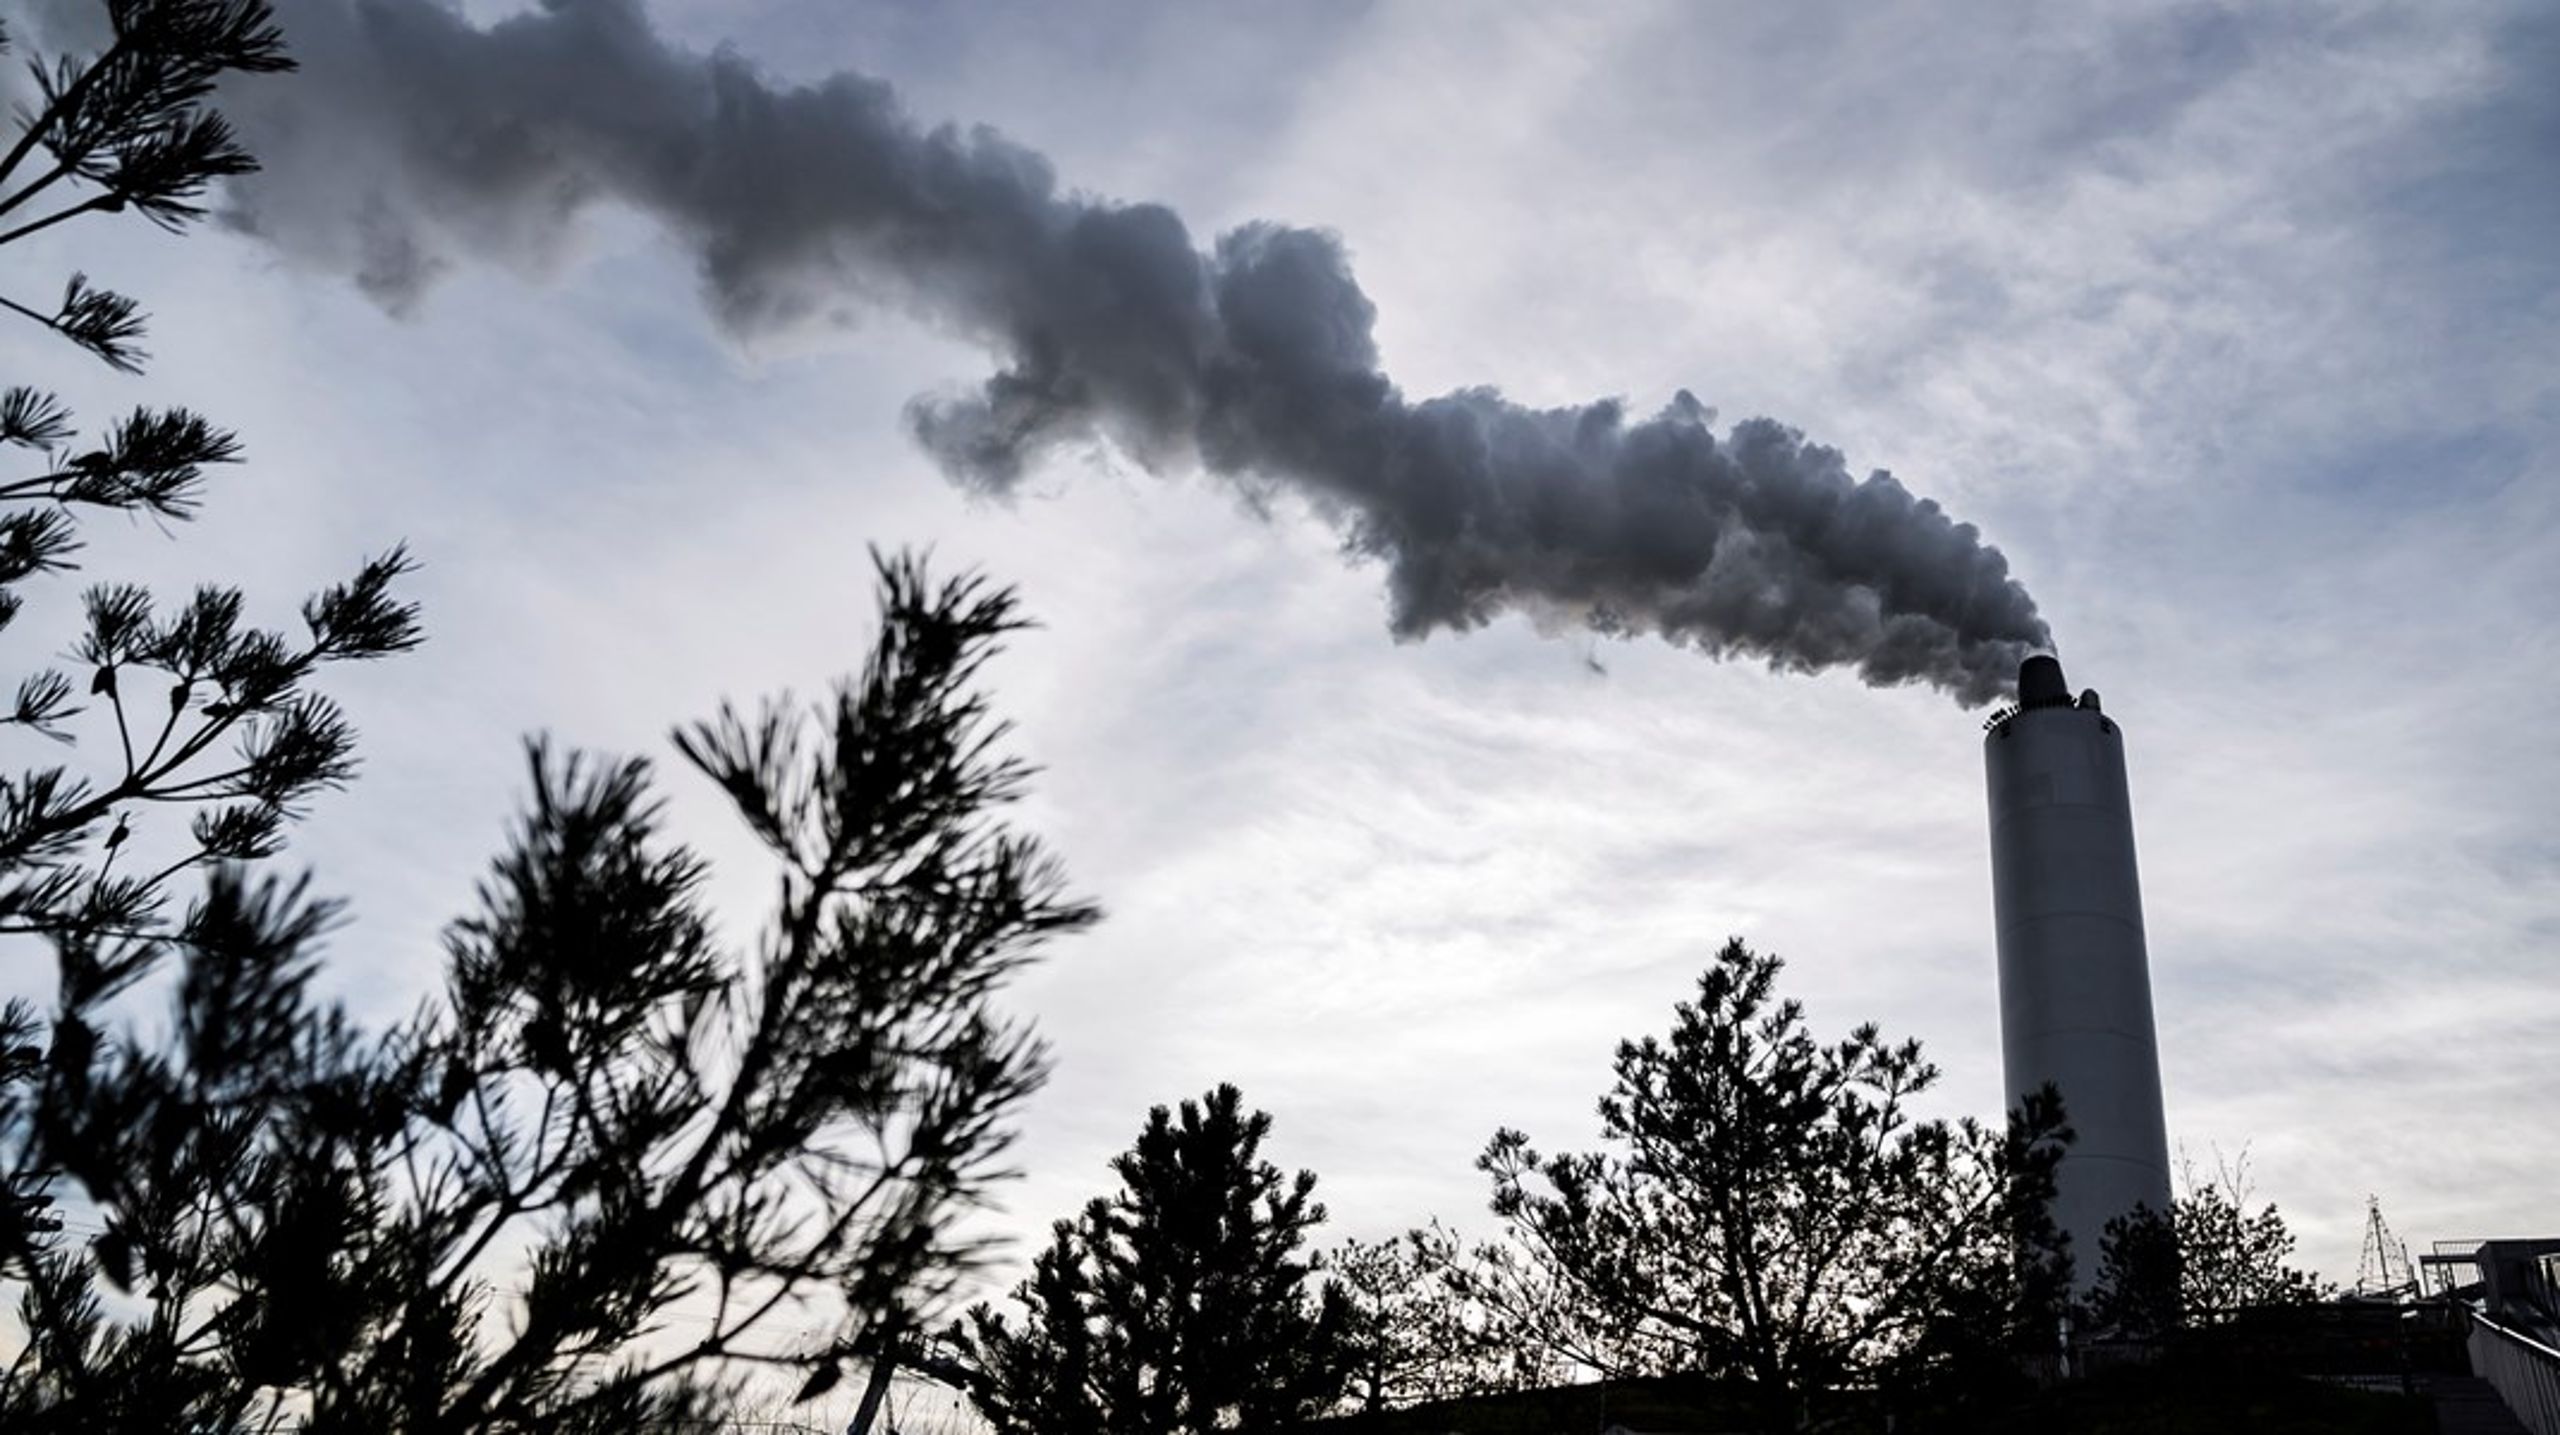 Træbiomasse udleder CO2, når den bliver brændt af, men det skal ses i forhold til alternativet, som i øjeblikket er at skrue op for de fossile brændsler, skriver Anders Frandsen, Steen Vincens Riber og Michael Sheedy Gehlert.